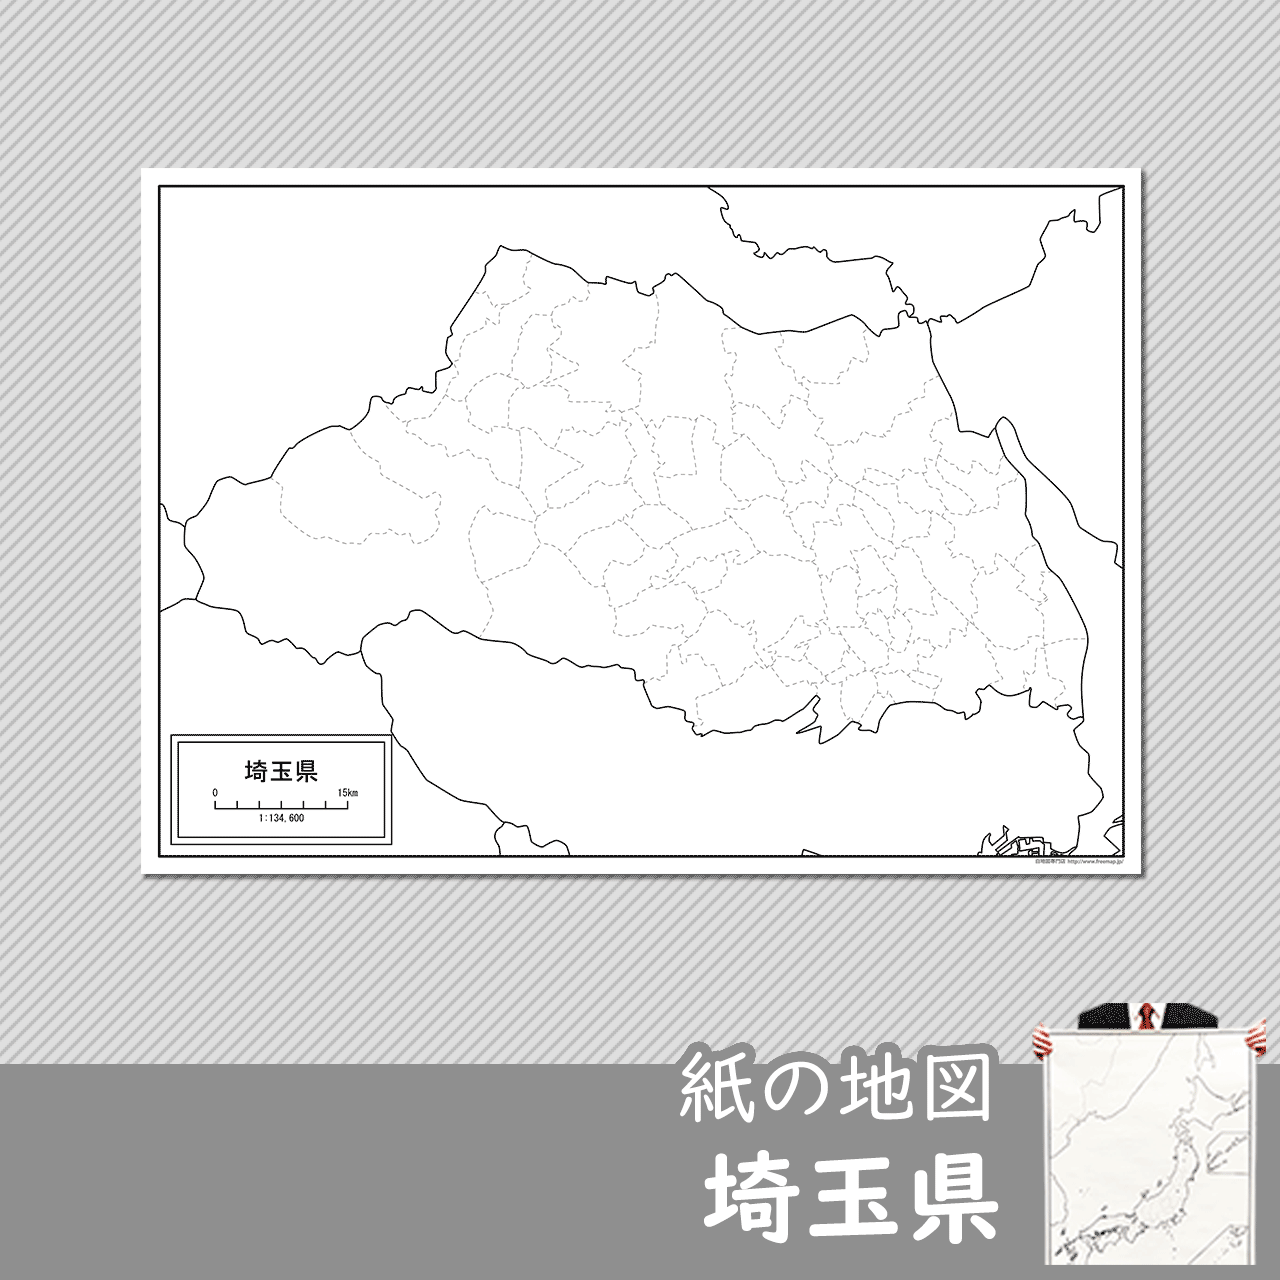 埼玉県の紙の白地図のサムネイル